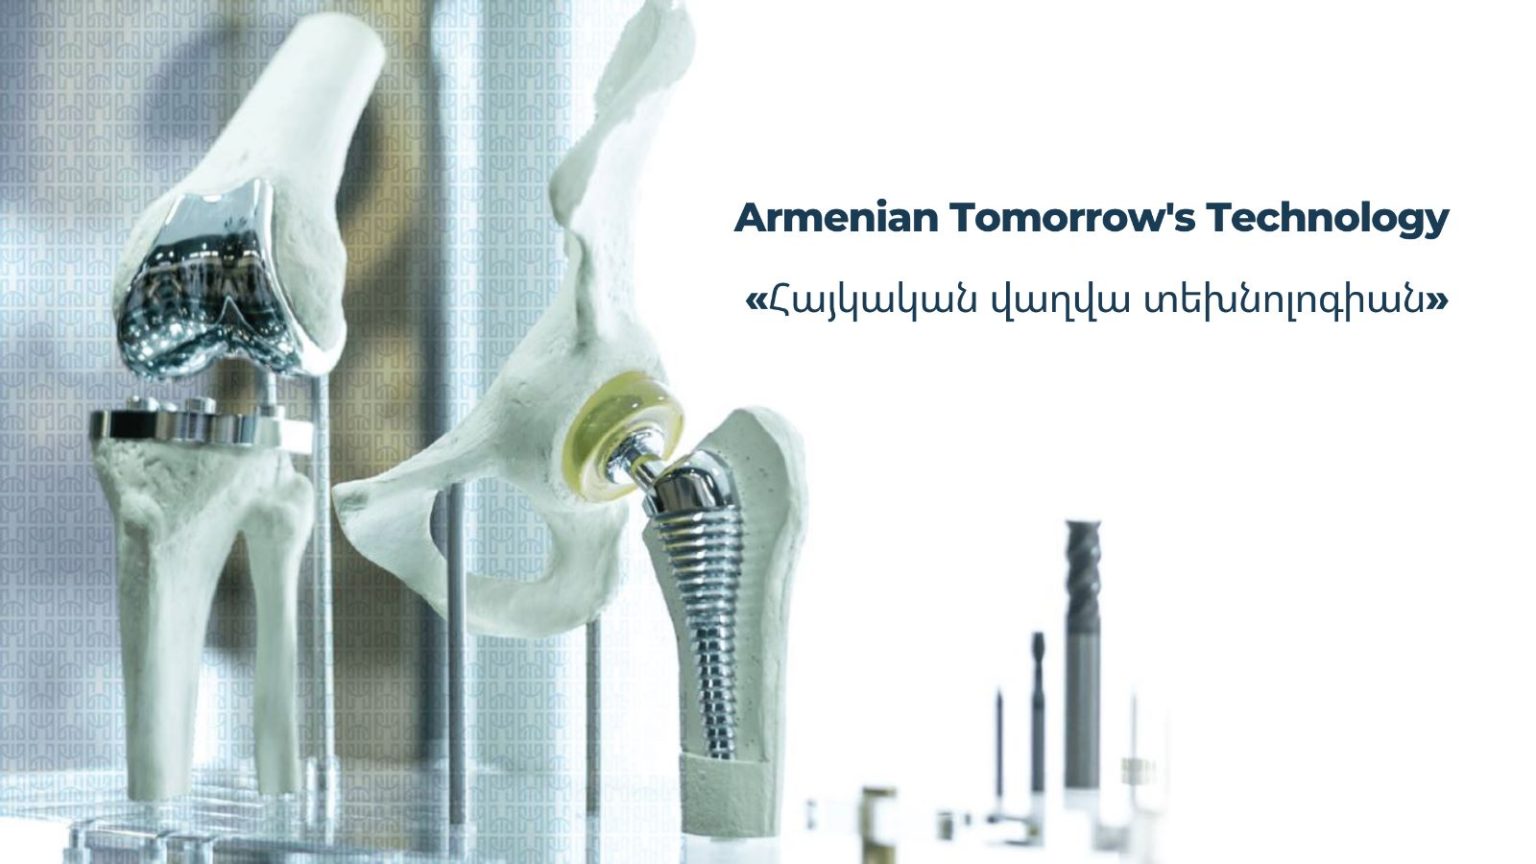 Երևանում տեղի կունենա բժշկական տեխնոլոգիաների կոնֆերանս